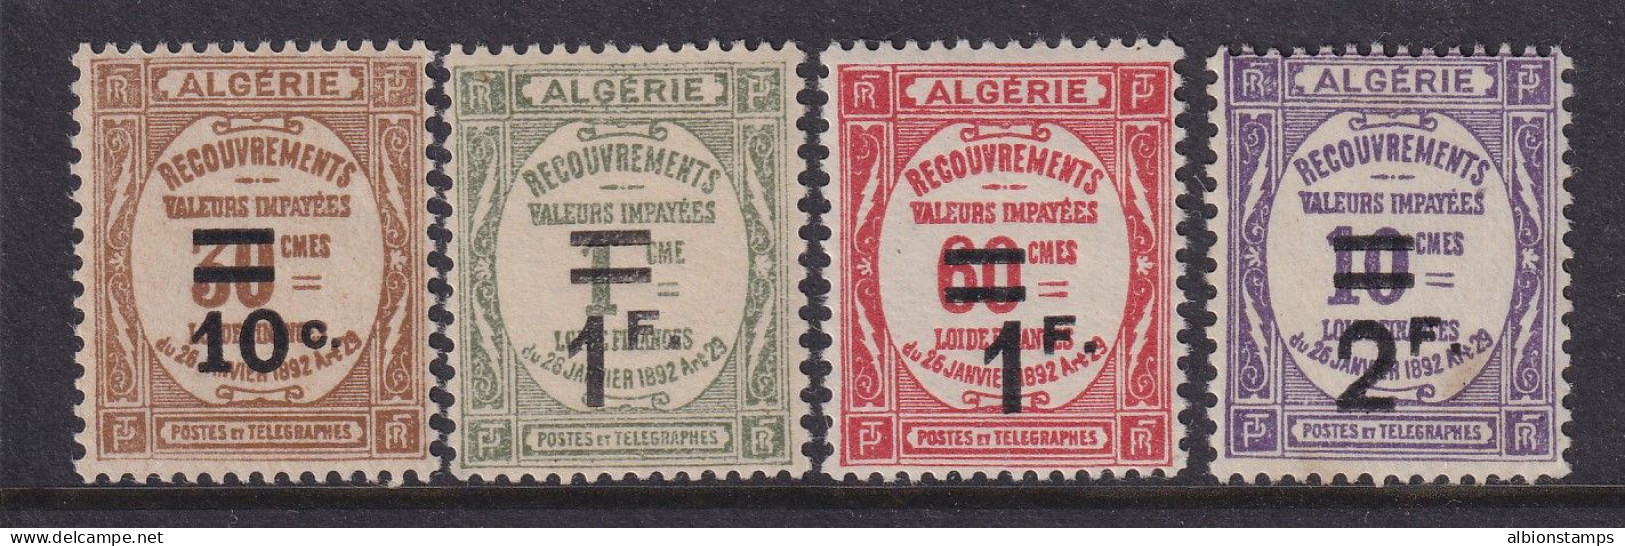 Algeria, Scott J21-J24 (Yvert TT21-TT24), MLH - Timbres-taxe